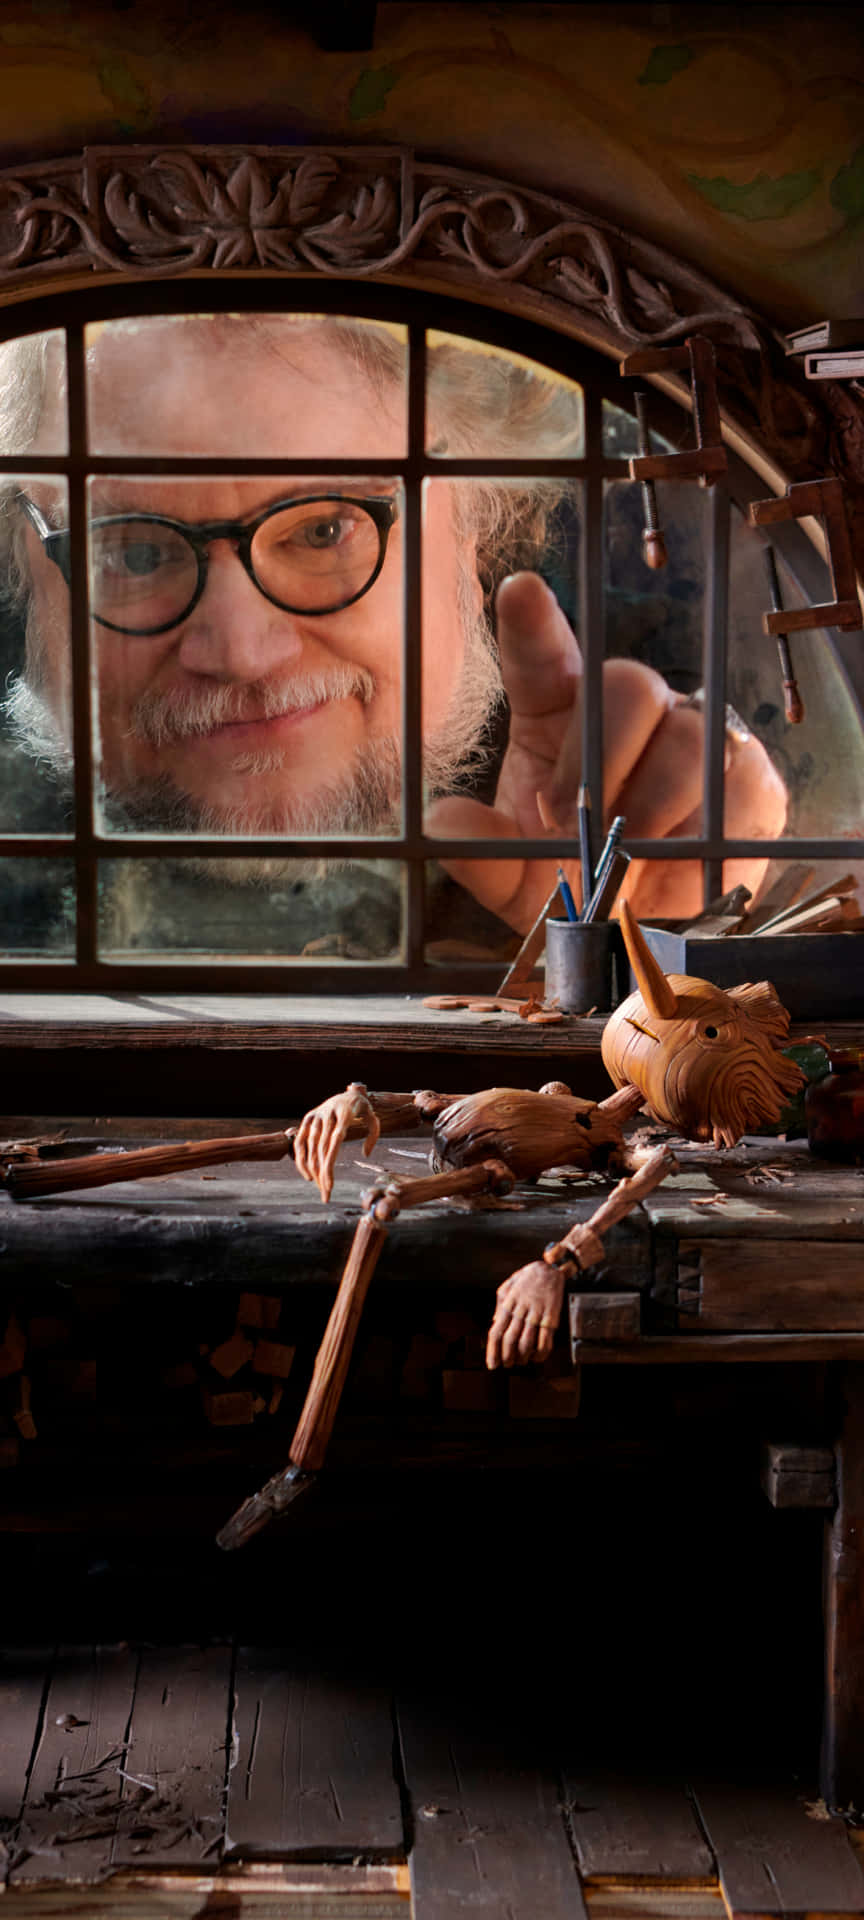 Guillermo Del Toro's Pinocchio in a Dark, Magical World Wallpaper